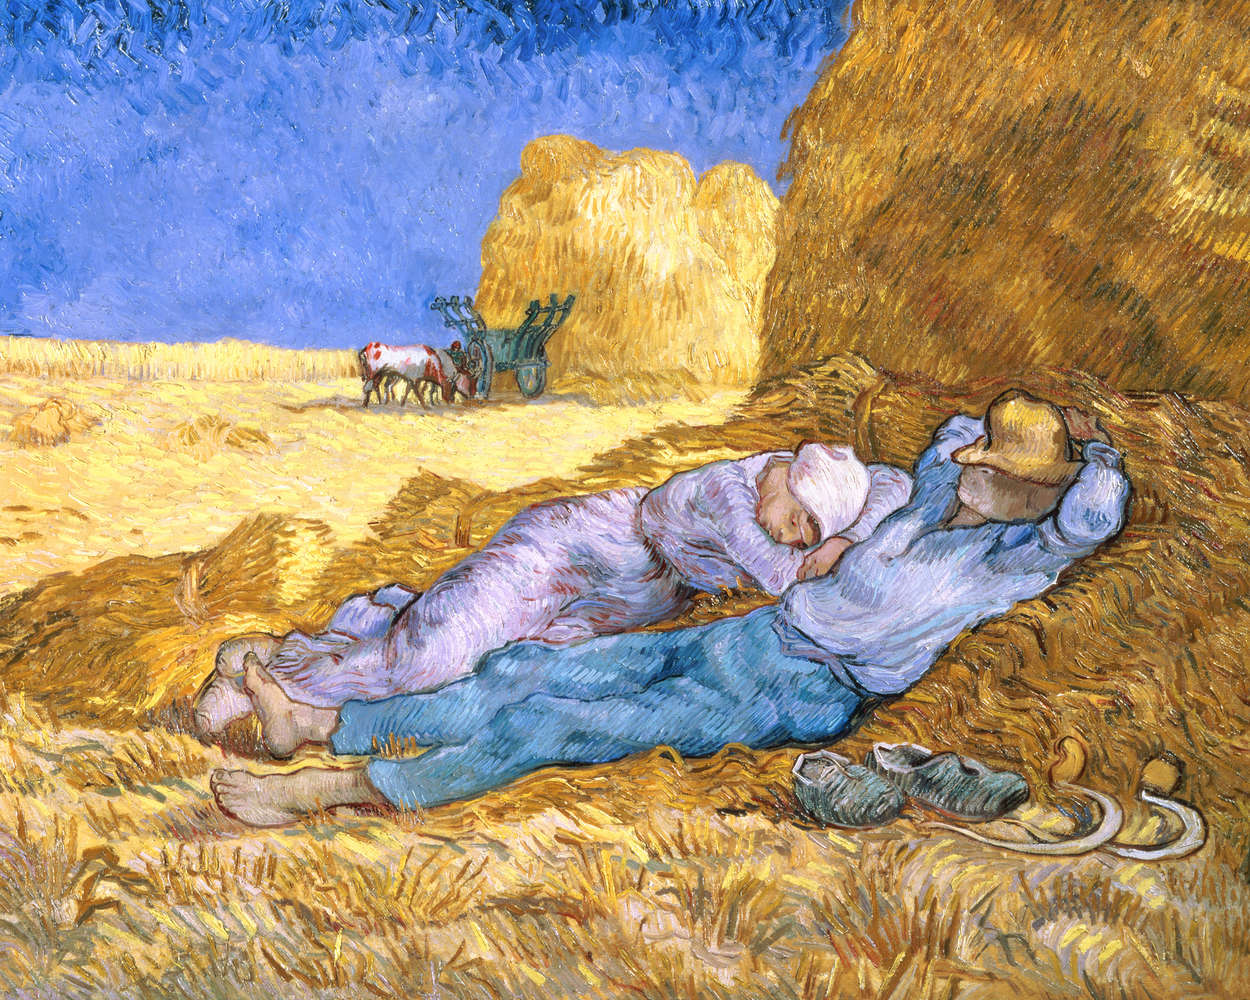             Fototapete "Die Siesta nach Millet" von Vincent van Gogh
        